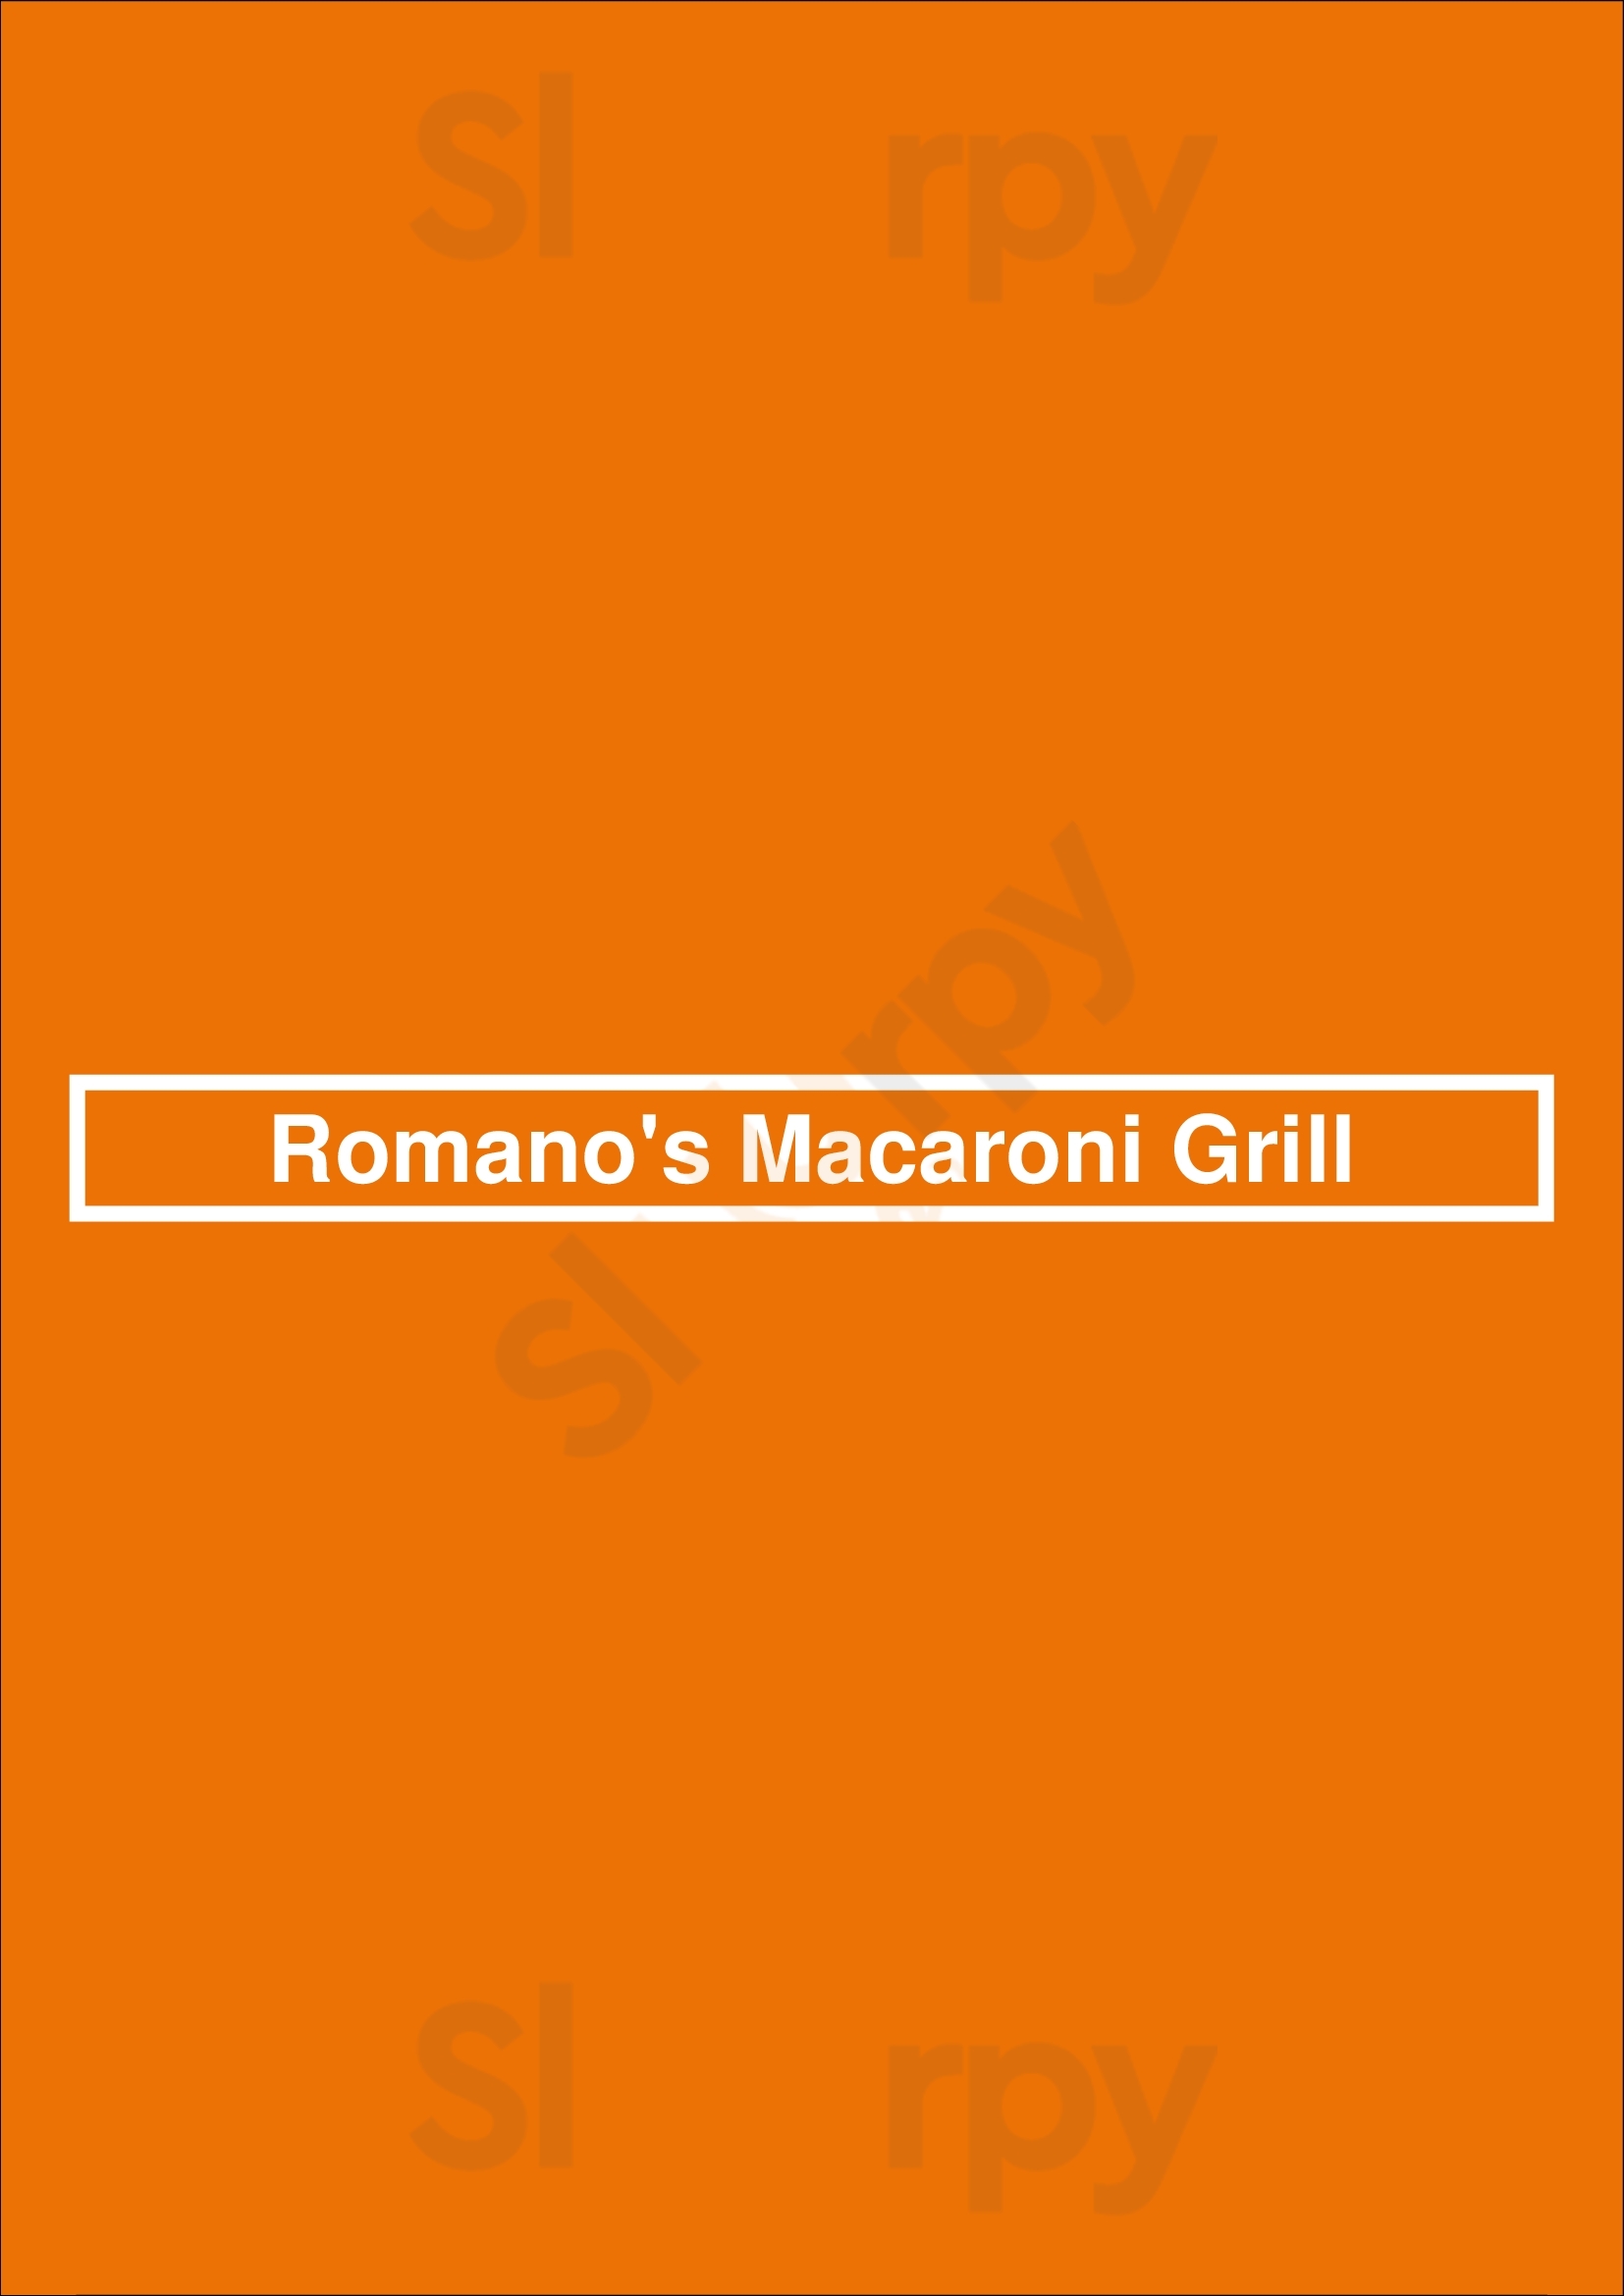 Romano's Macaroni Grill Milpitas Menu - 1